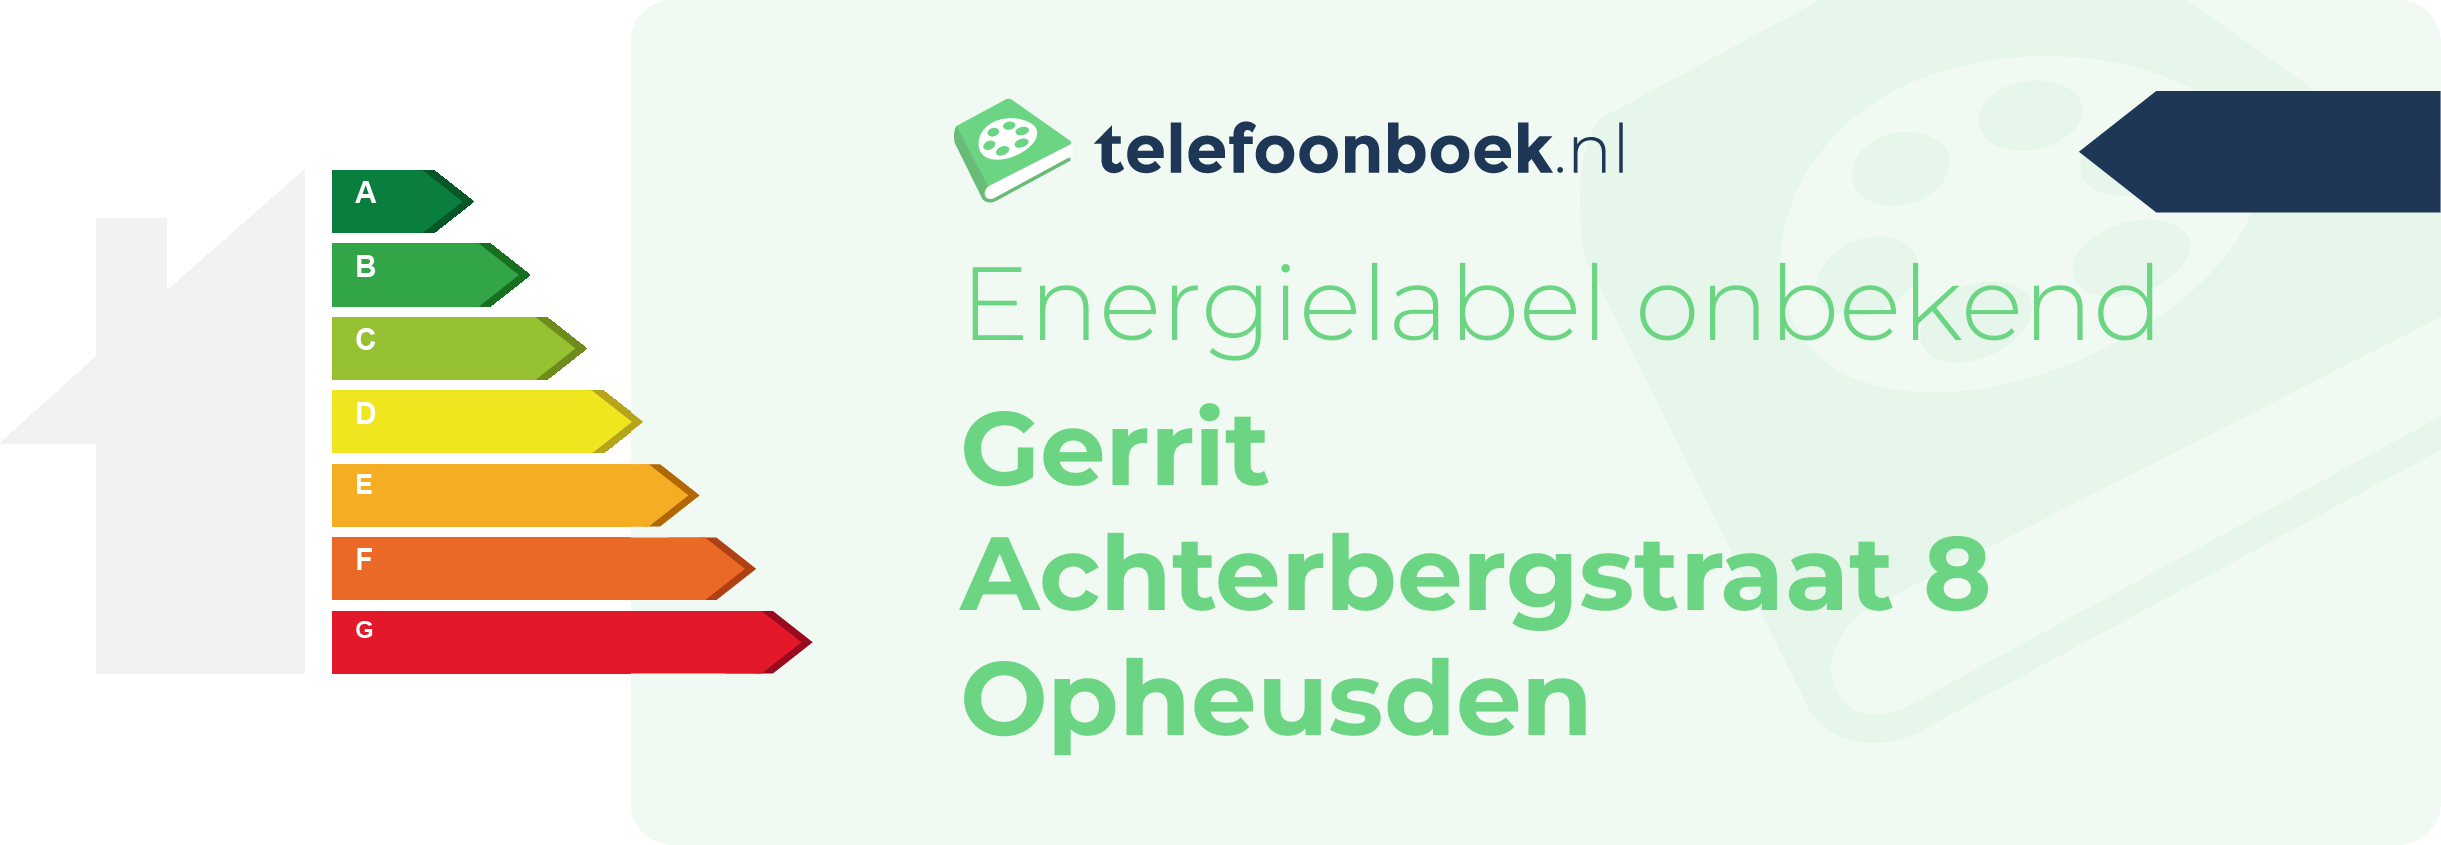 Energielabel Gerrit Achterbergstraat 8 Opheusden